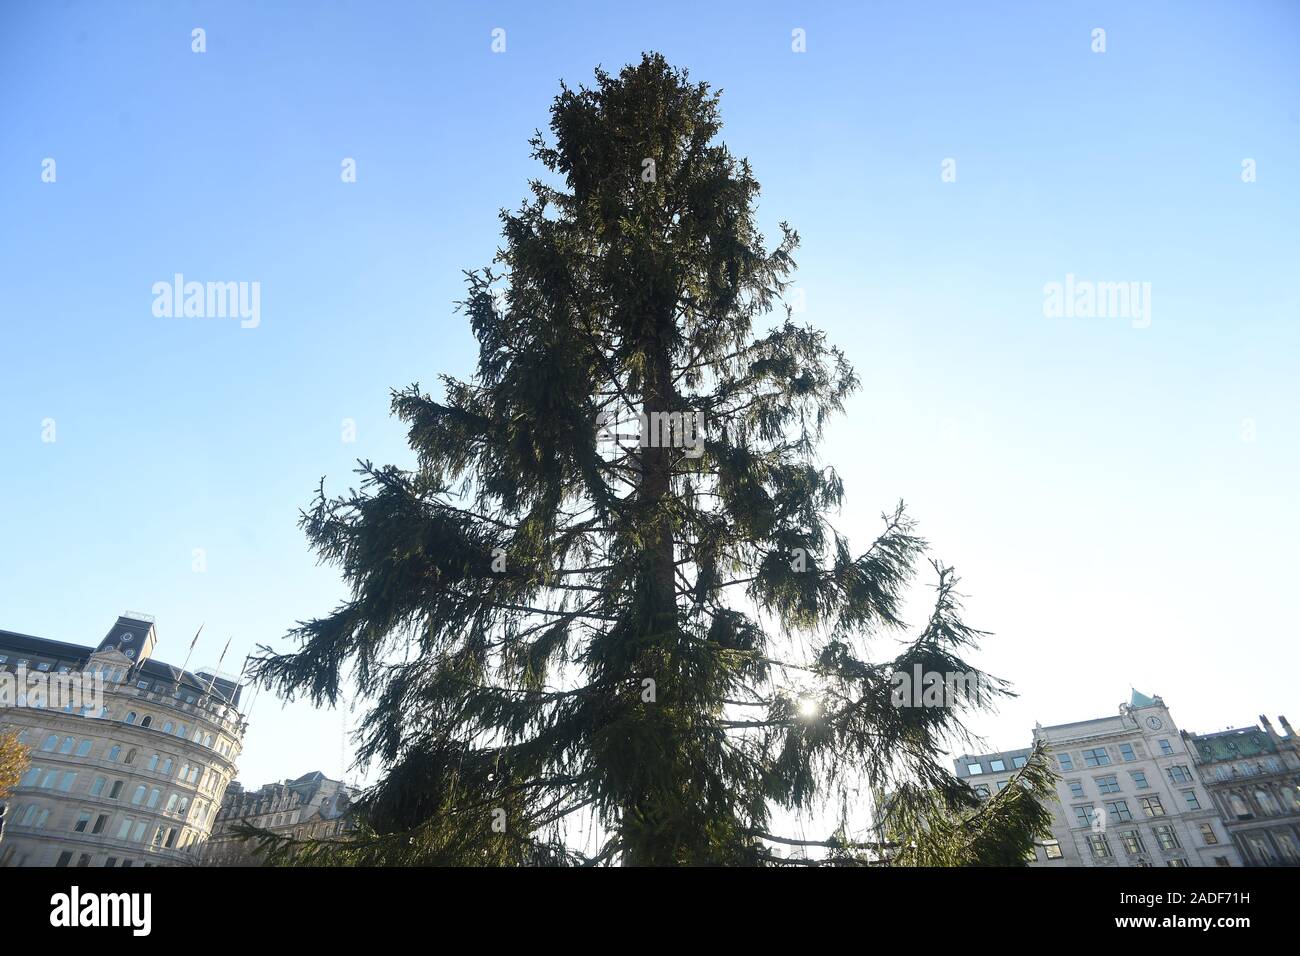 Der Weihnachtsbaum auf dem Trafalgar Square, der jedes Jahr von der Stadt Oslo als Zeichen der Norwegischen Dankbarkeit für die Bevölkerung von London für ihre Unterstützung während des Zweiten Weltkrieges und deren Lichter am Donnerstag Abend gedreht werden. Aber einige Leute sind besorgt, dass es sieht ein wenig dünner als üblich. Stockfoto